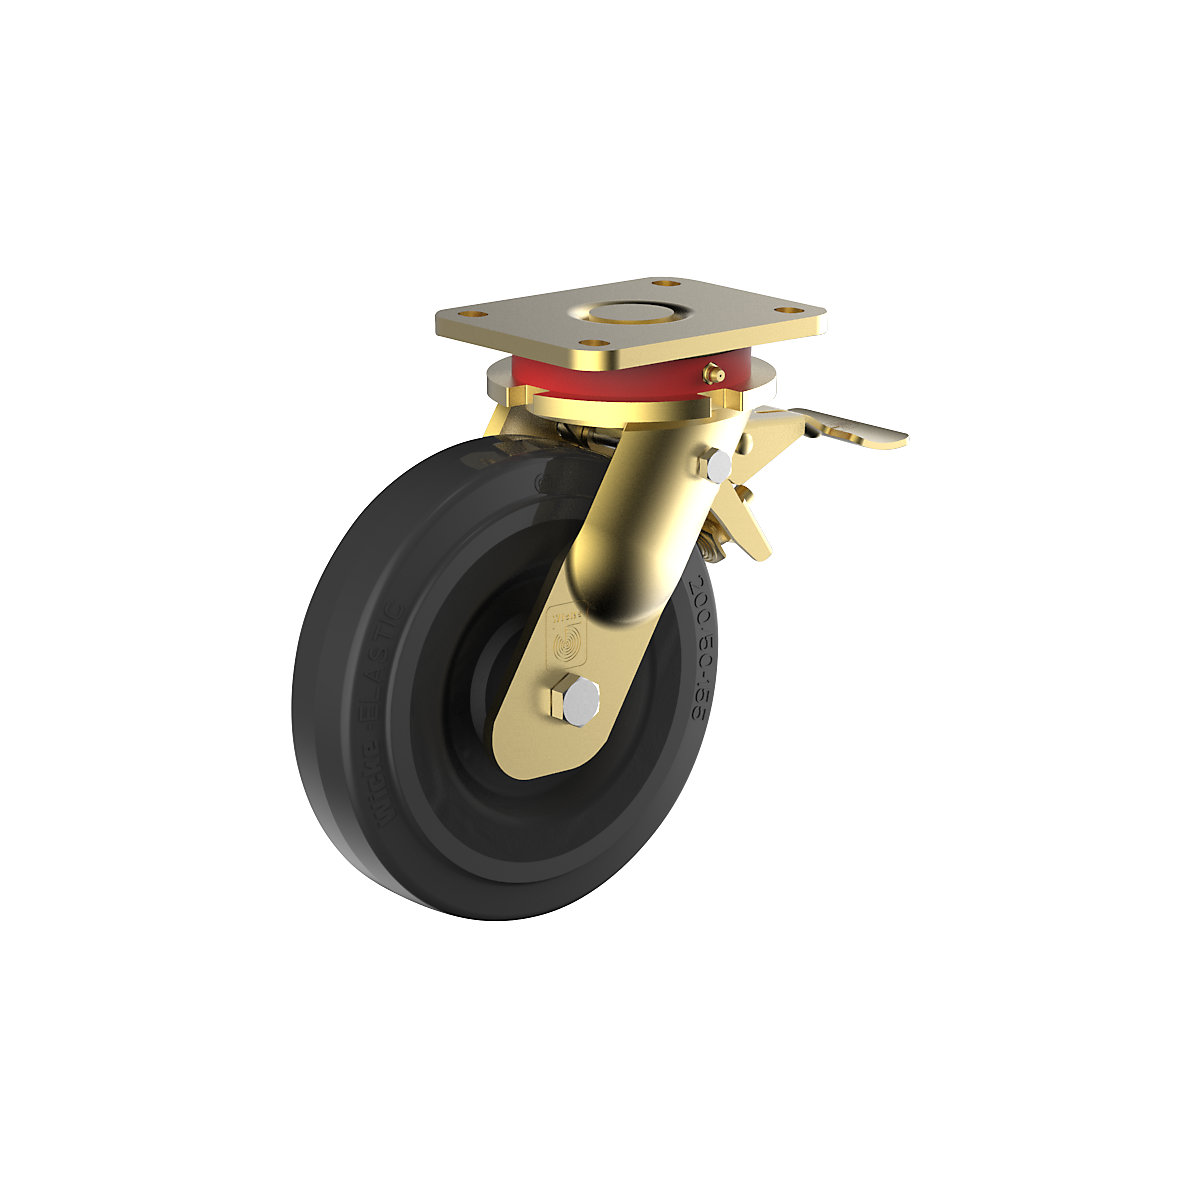 Roda de borracha maciça elástica, corpo em aço, soldada – Wicke, Ø da roda x largura 200 x 50 mm, roda orientável com bloqueio duplo-3